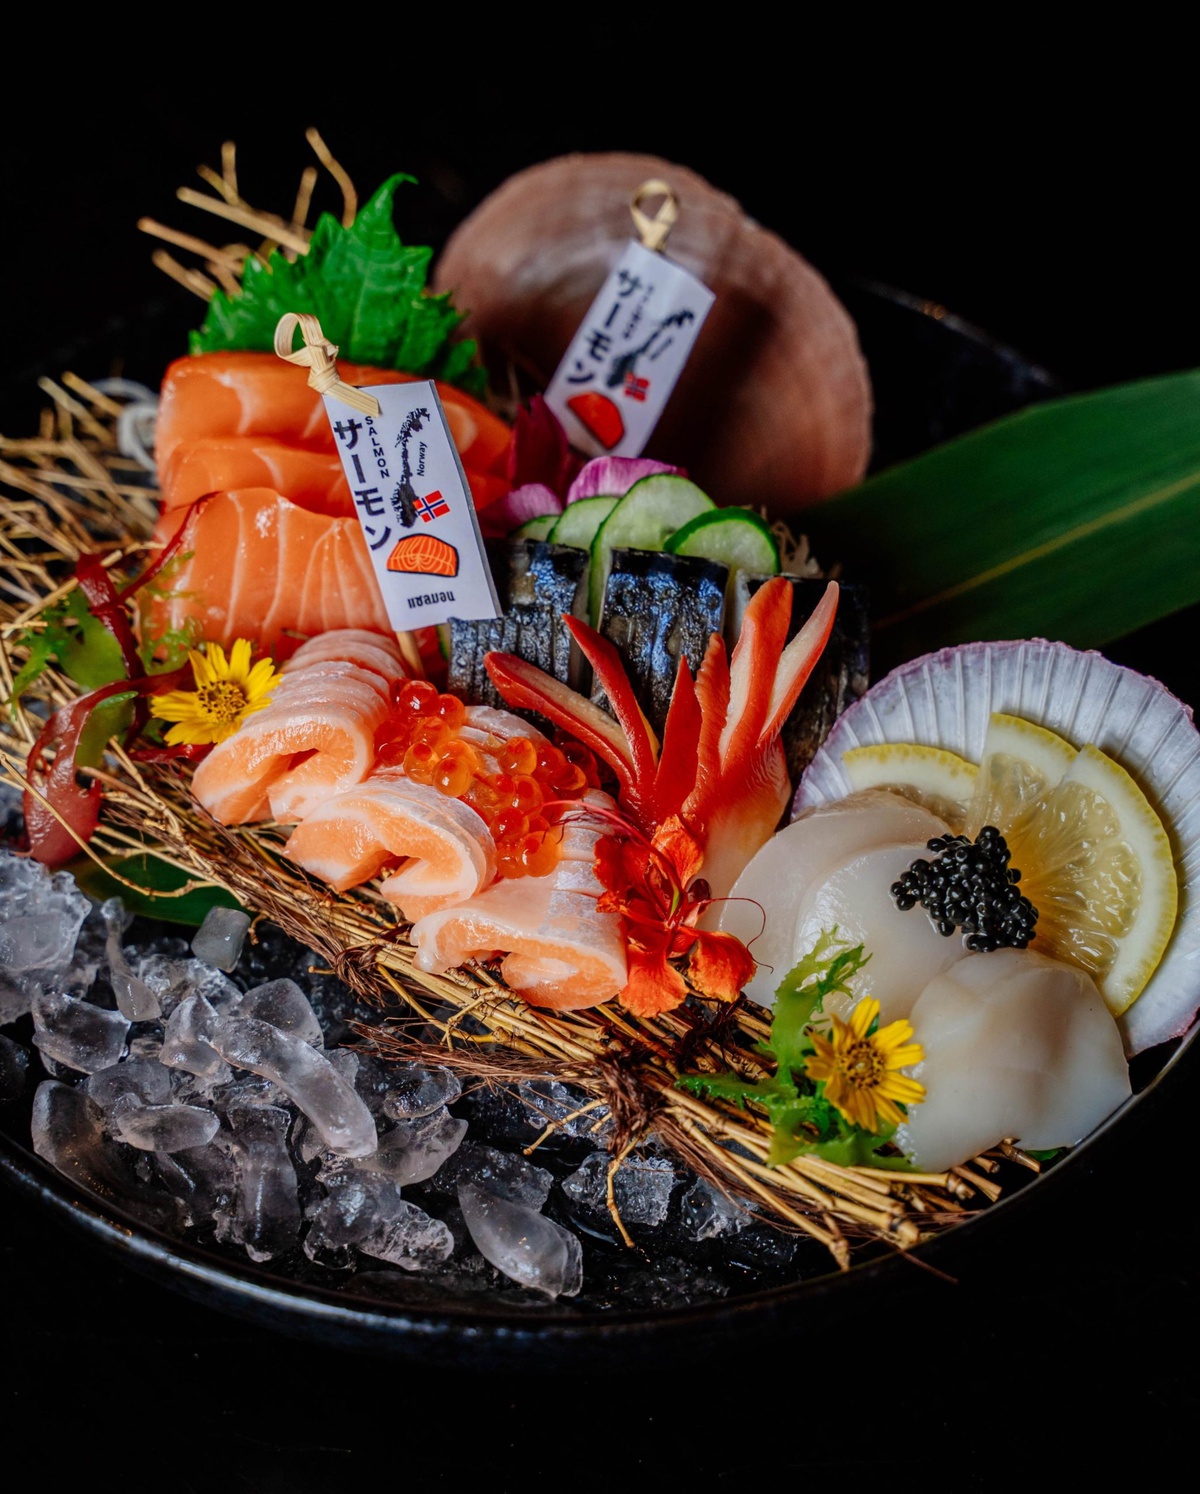 สัมผัสสุนทรียรสชาติอาหารญี่ปุ่น ขุมทรัพย์ความอร่อยแห่งท้องทะเลลึก ห้องอาหารฮากิ โรงแรมเซ็นทาราแกรนด์มิราจบีชรีสอร์ท